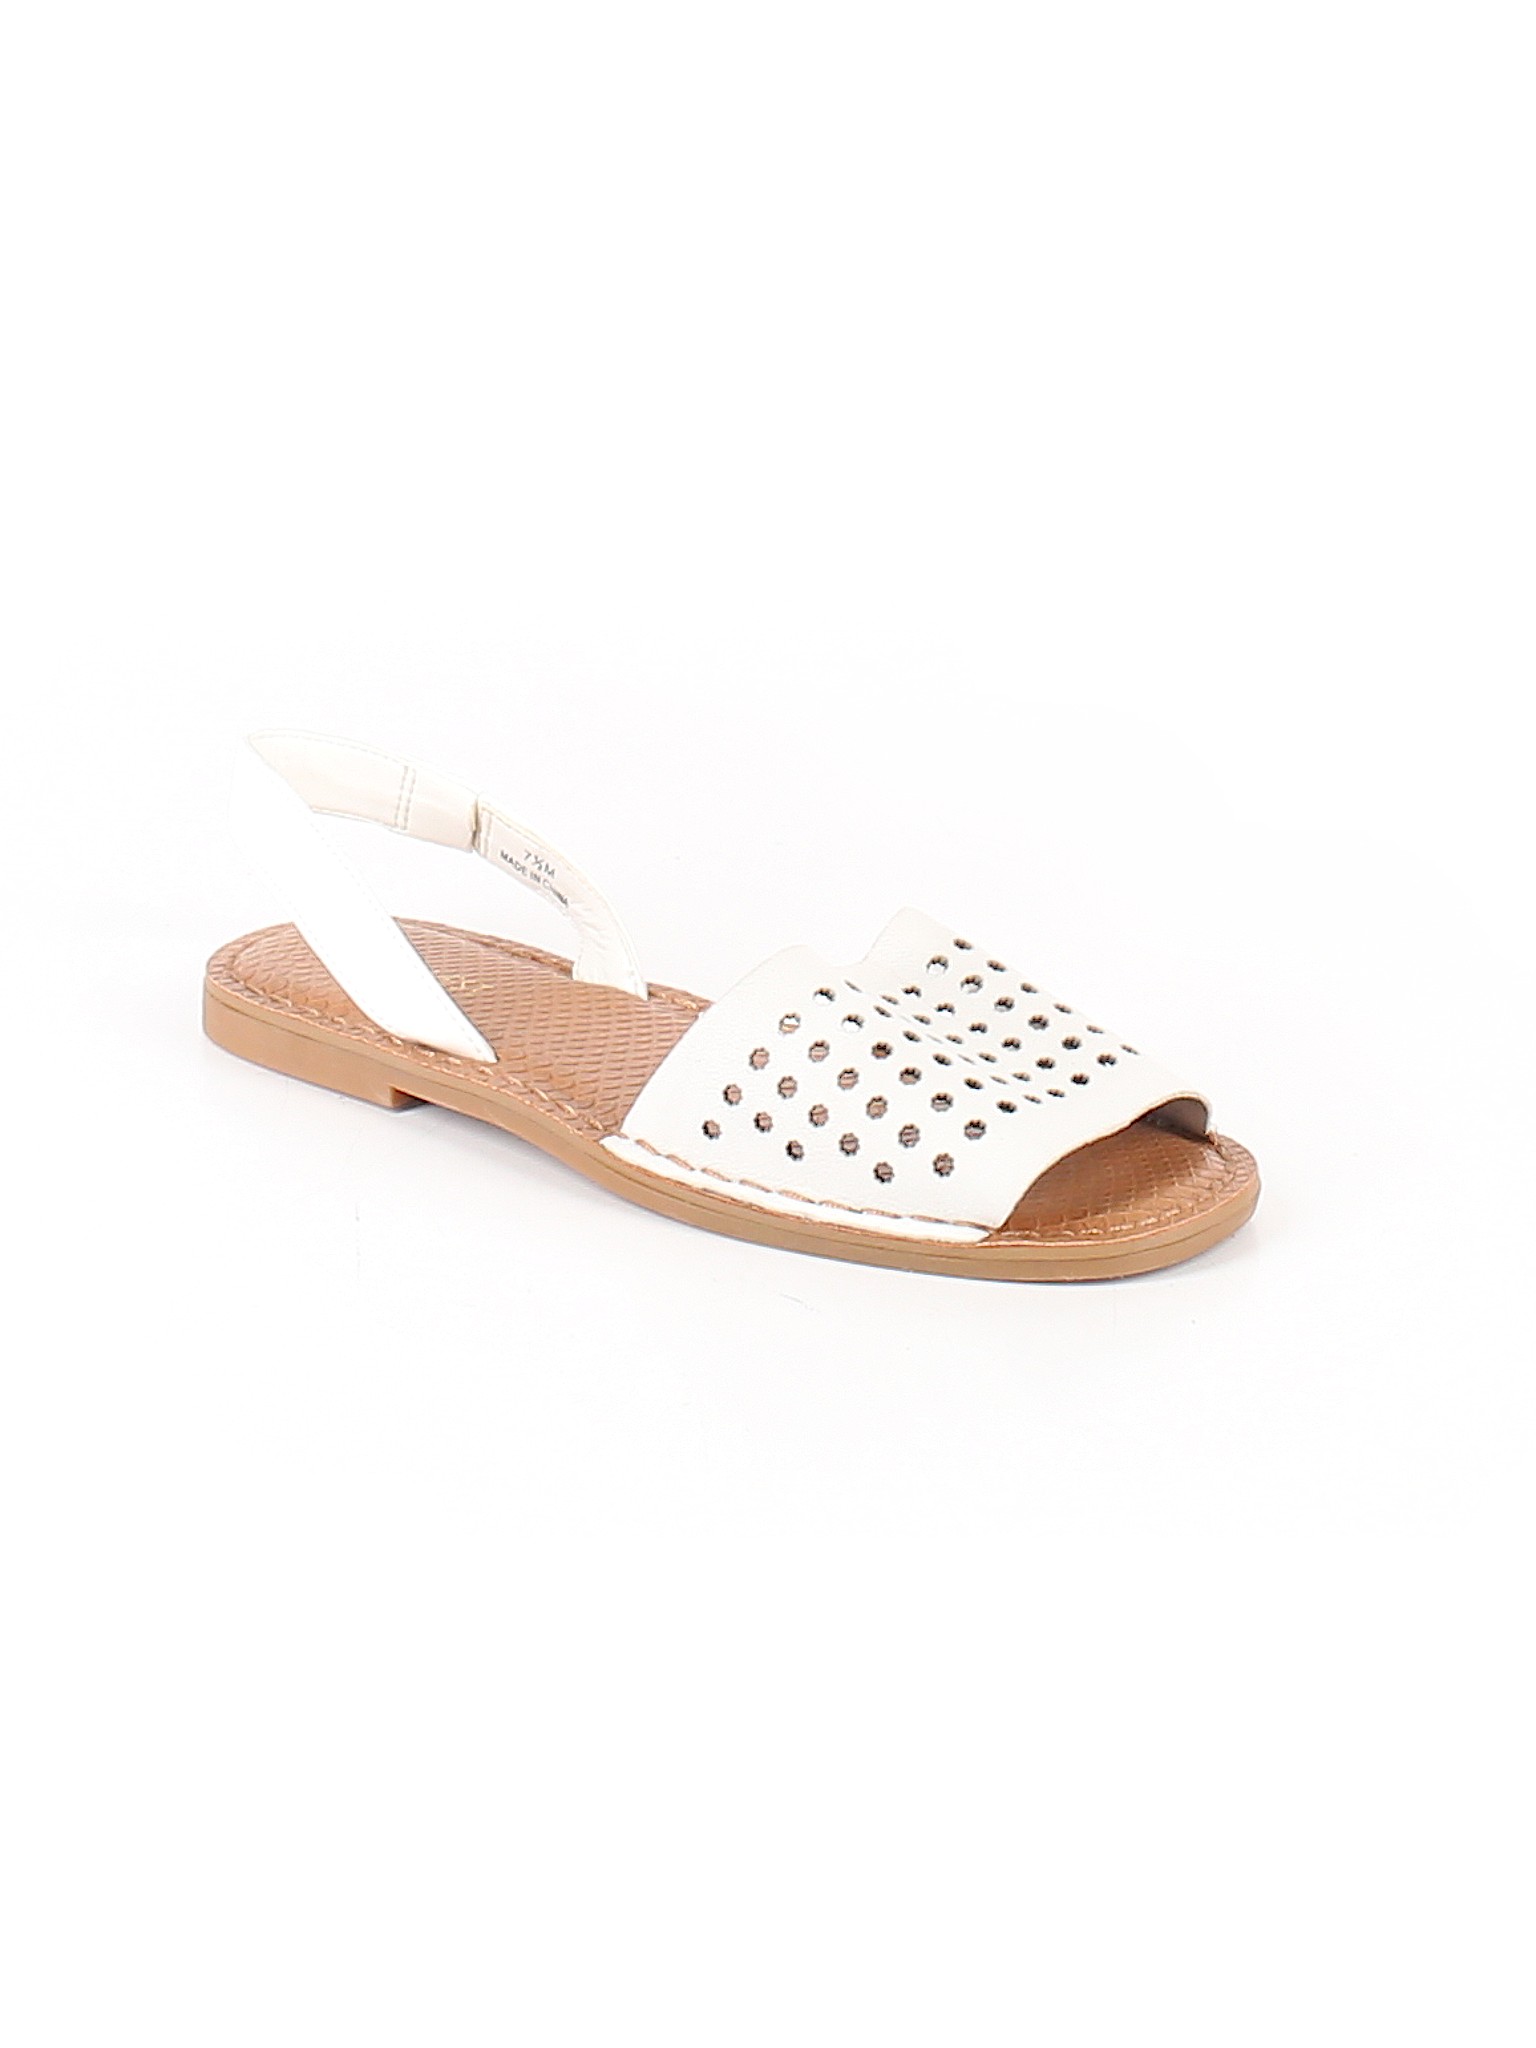 sandal white 7.5